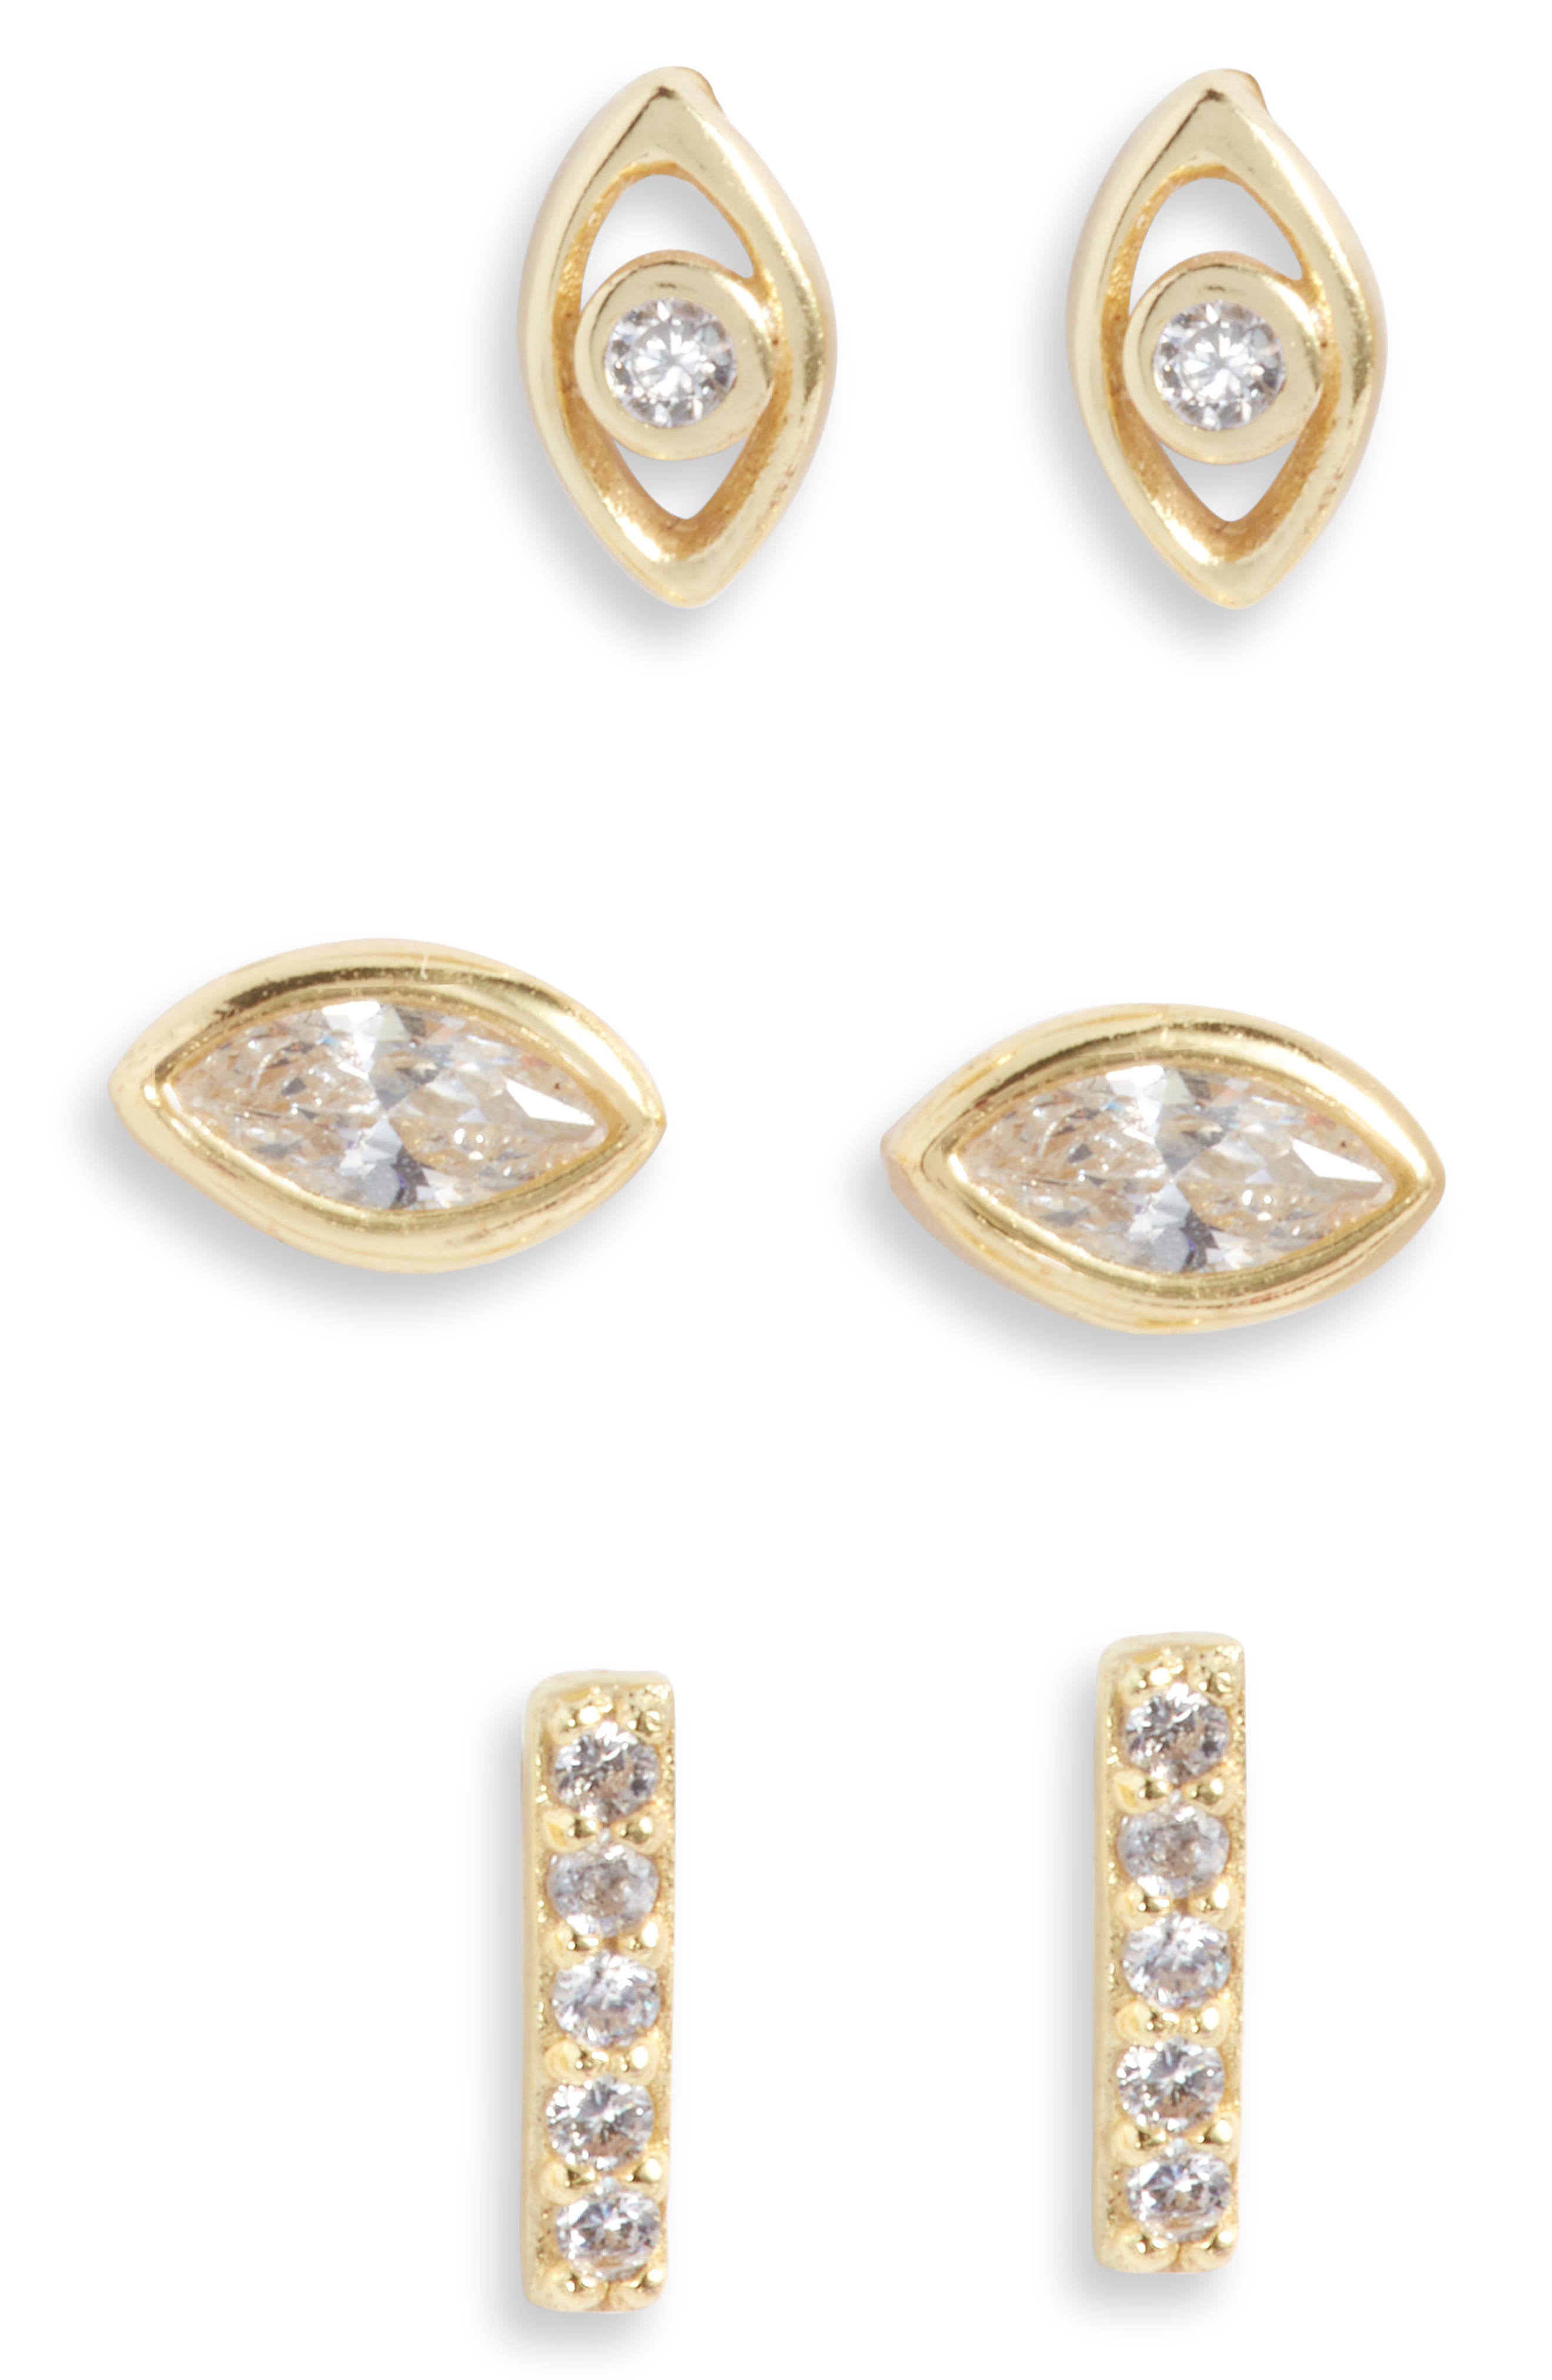 gift for her Oc\u00e9ane earrings horned shell earrings gold earrings delicate earrings dainty earrings handmade earrings